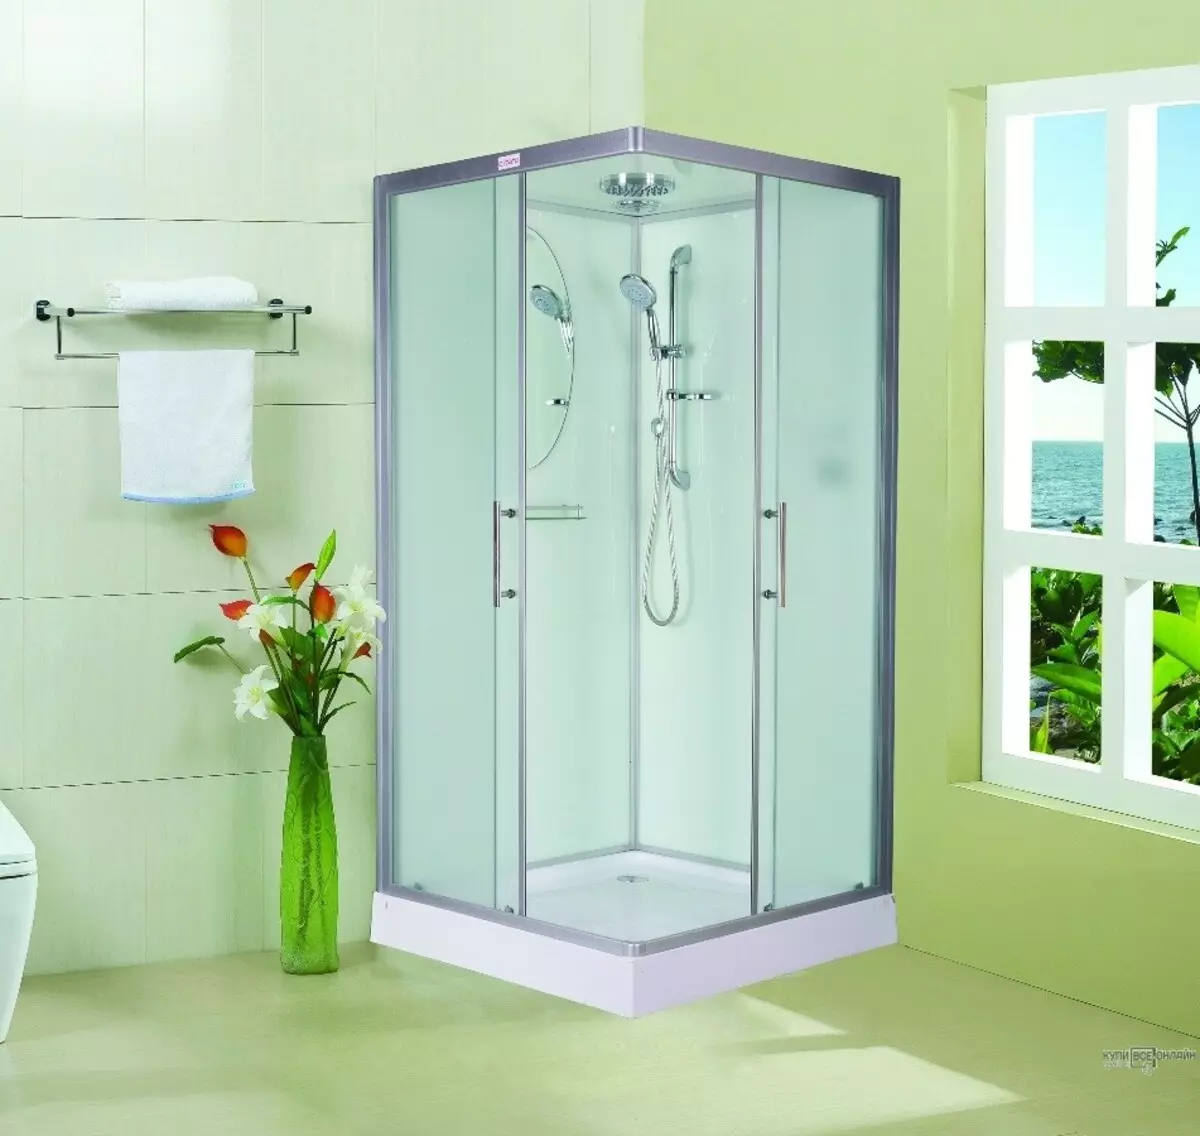 גובה התא המקלחת: גדלים סטנדרטיים, גובה הרצפה לתקרה ו 180-190 ס